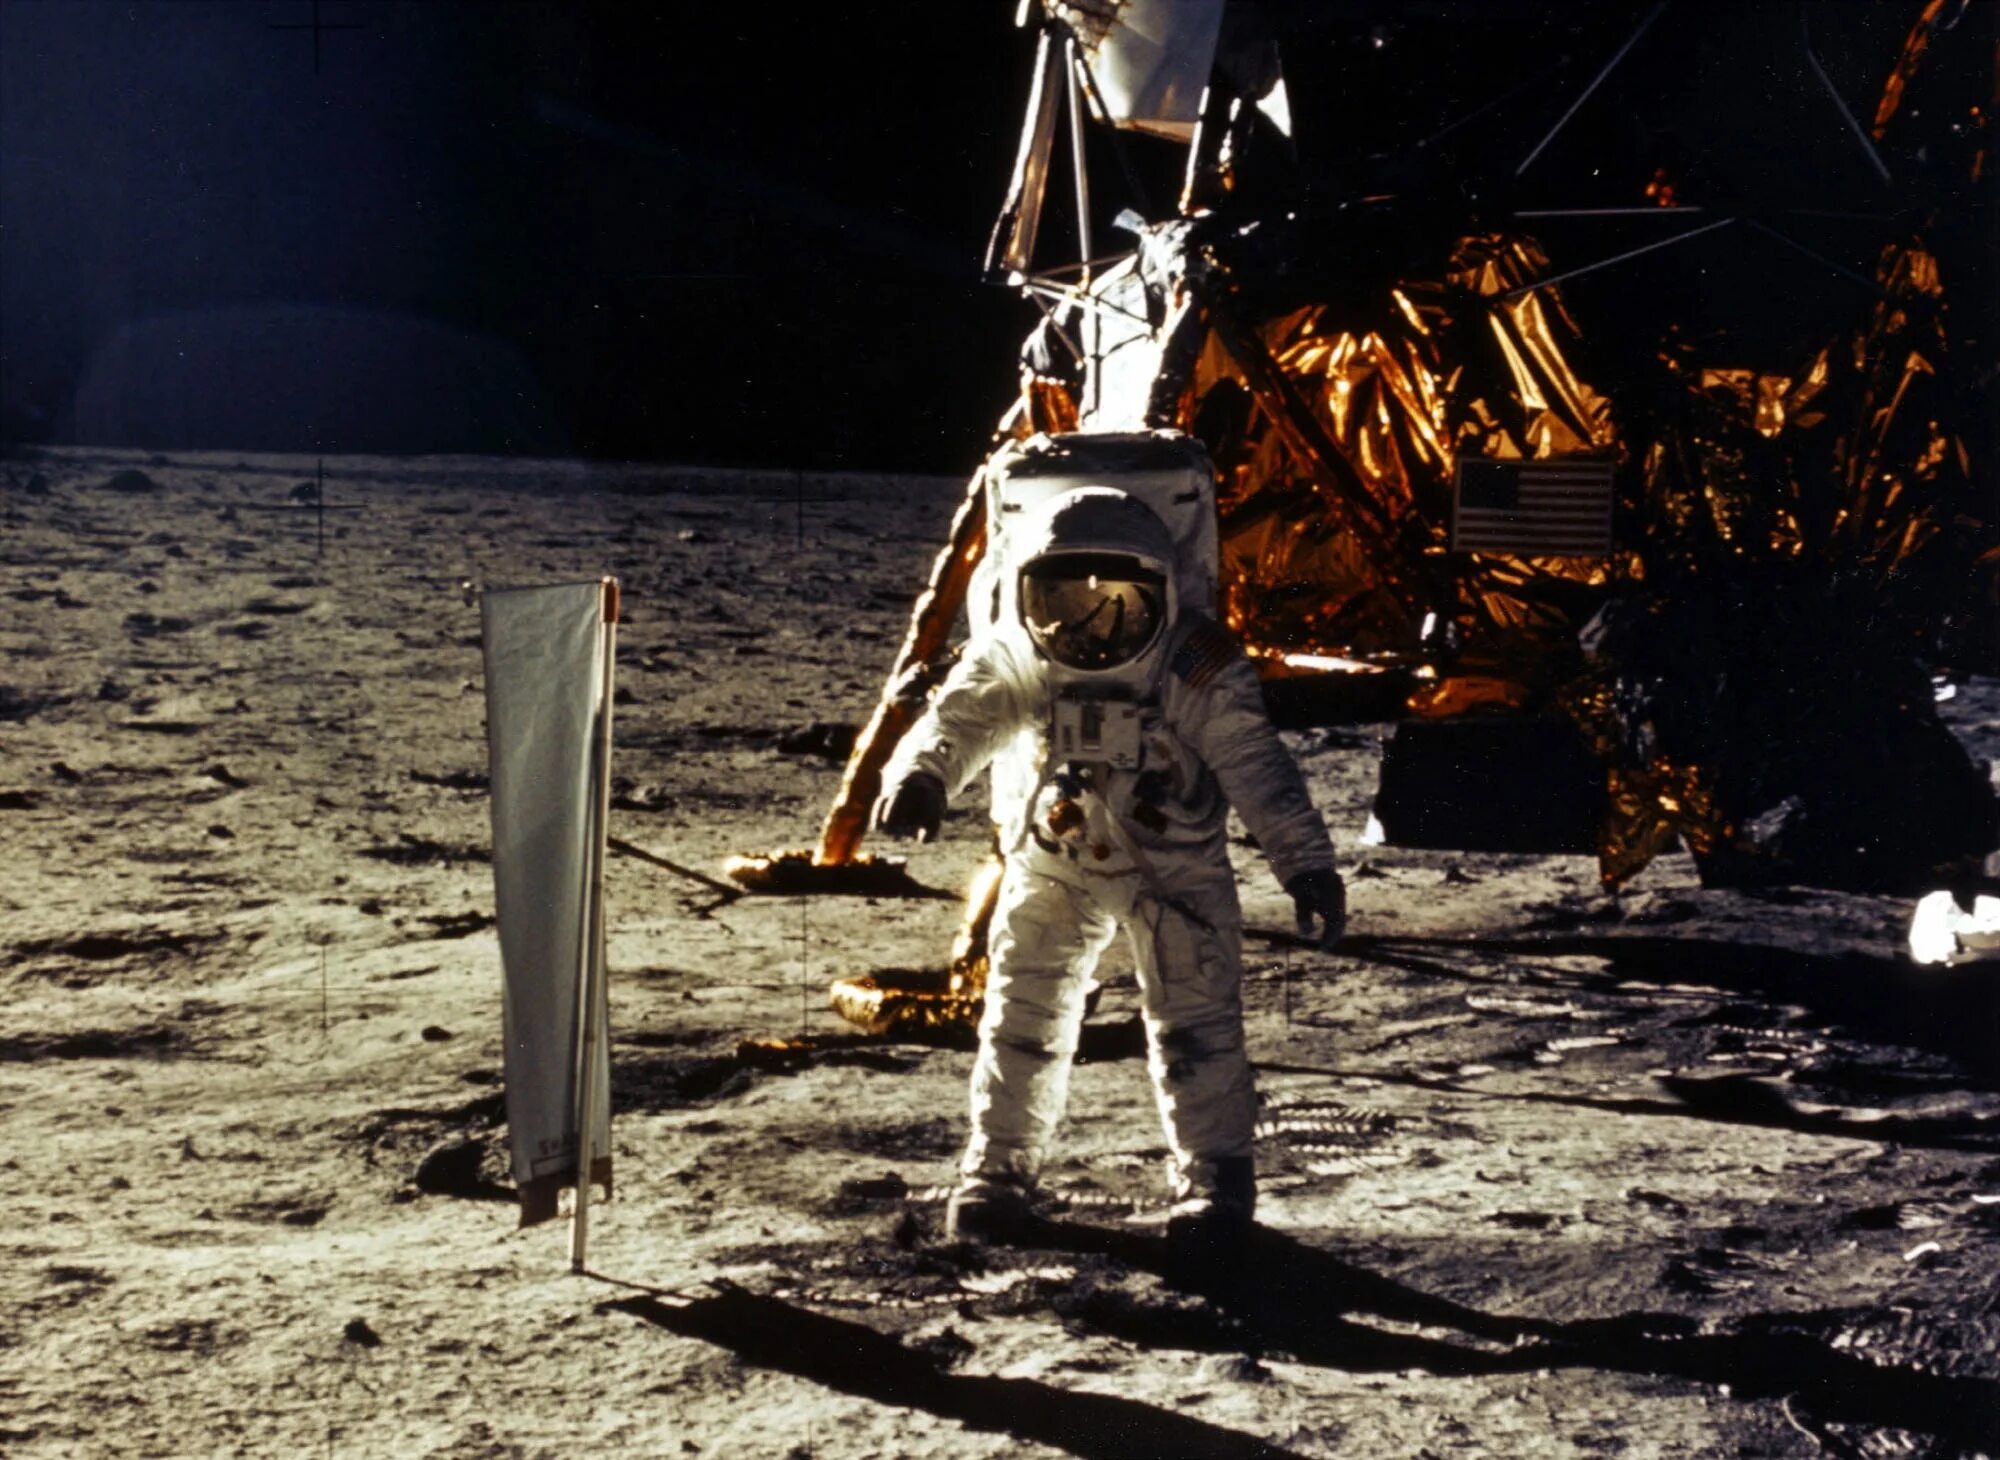 Apollo 11 1969. First moon landing